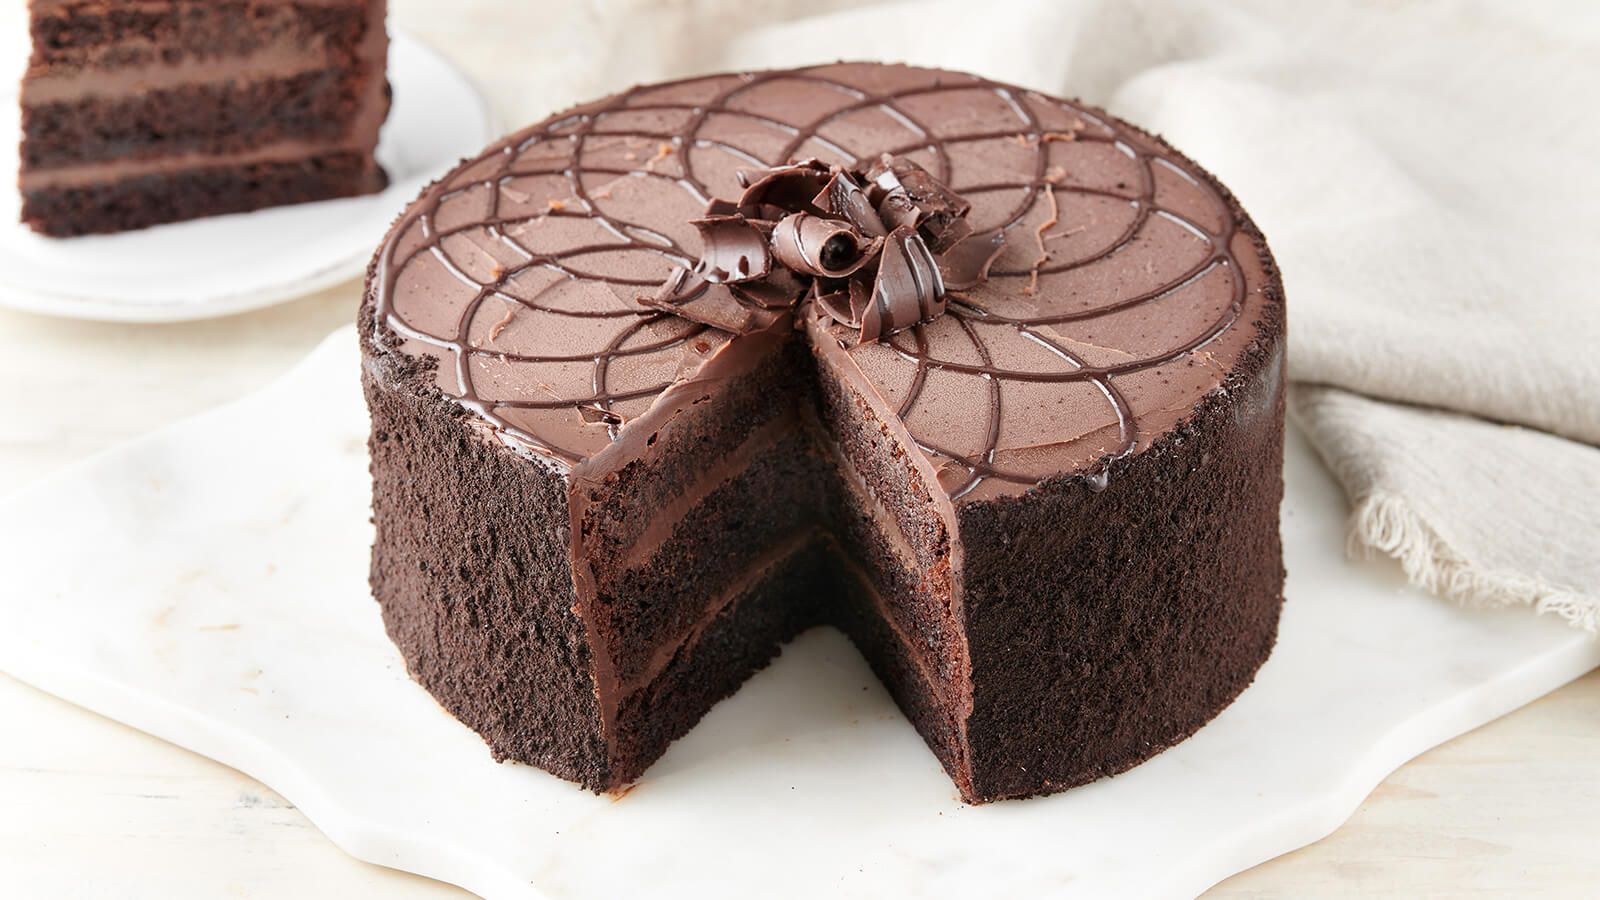 Chocolate-Ganache-Cake-2019-35836.jpg